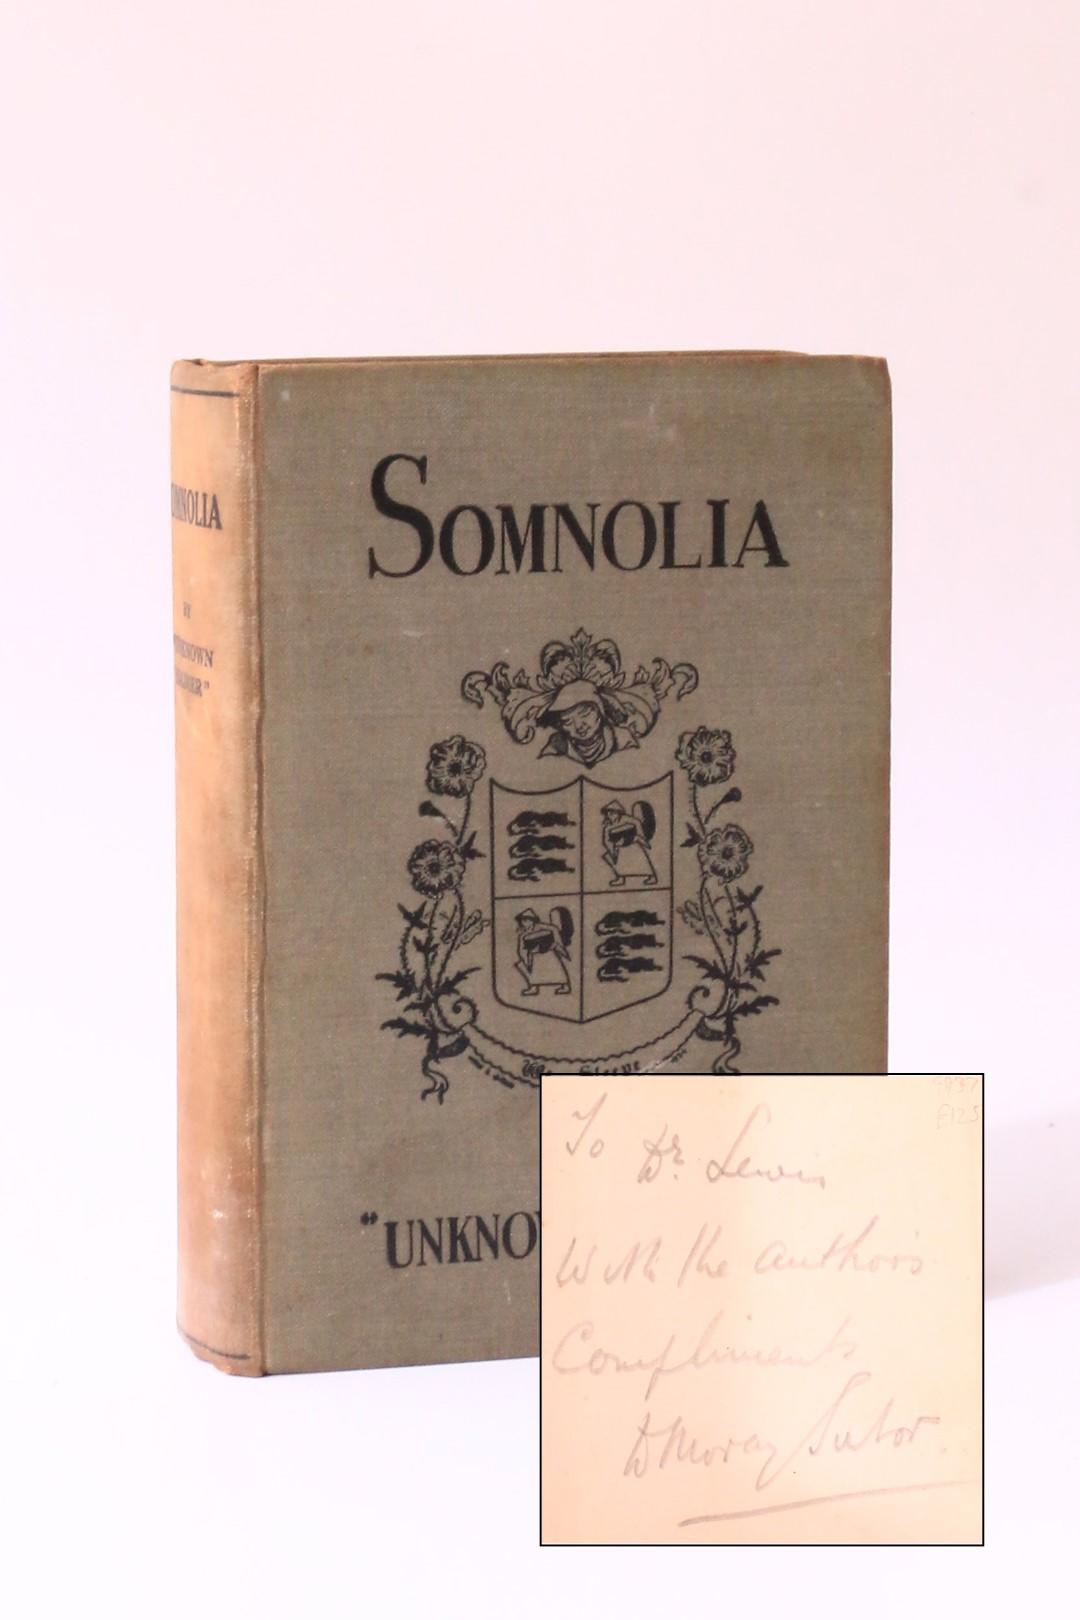 Unknown Soldier [Allen Sutor] - Somnolia - Kinnaird Press, n.d. [1934], Signed First Edition.